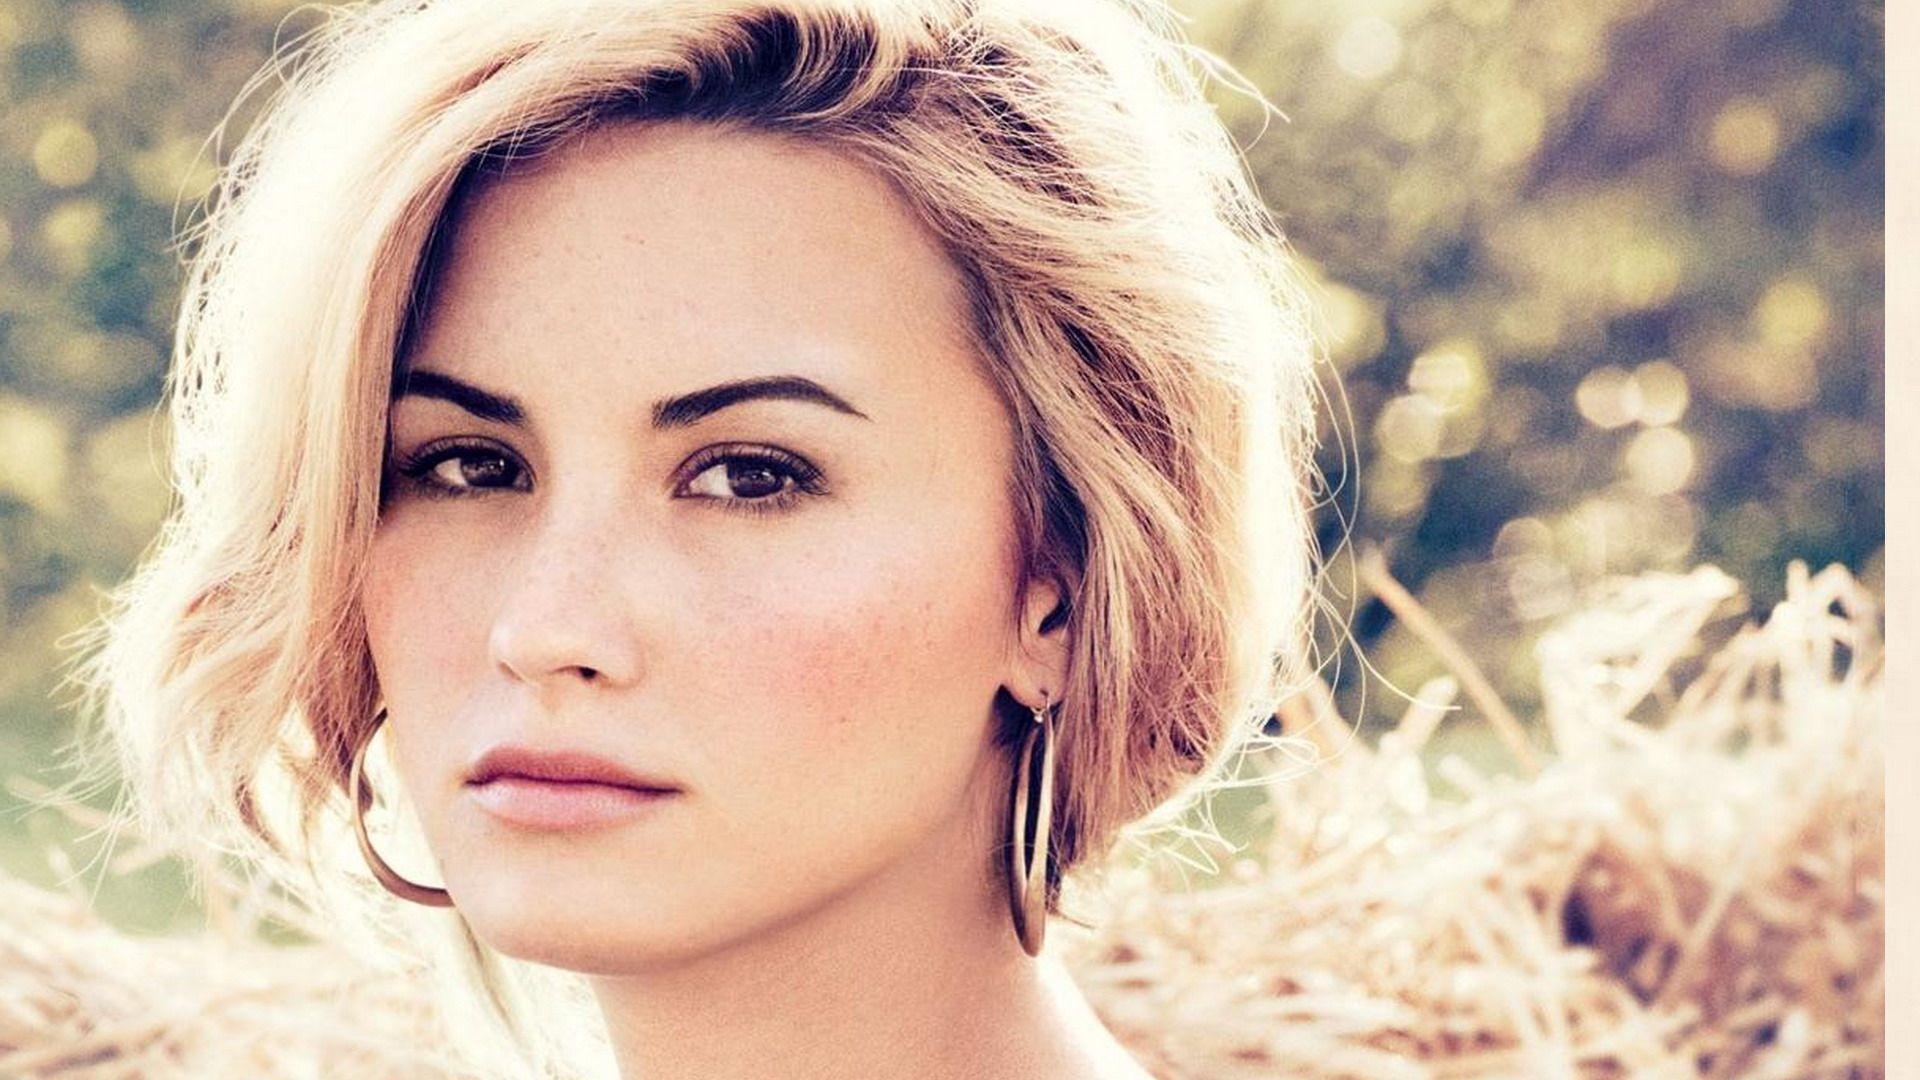 Demi Lovato Wallpaper HD 2015